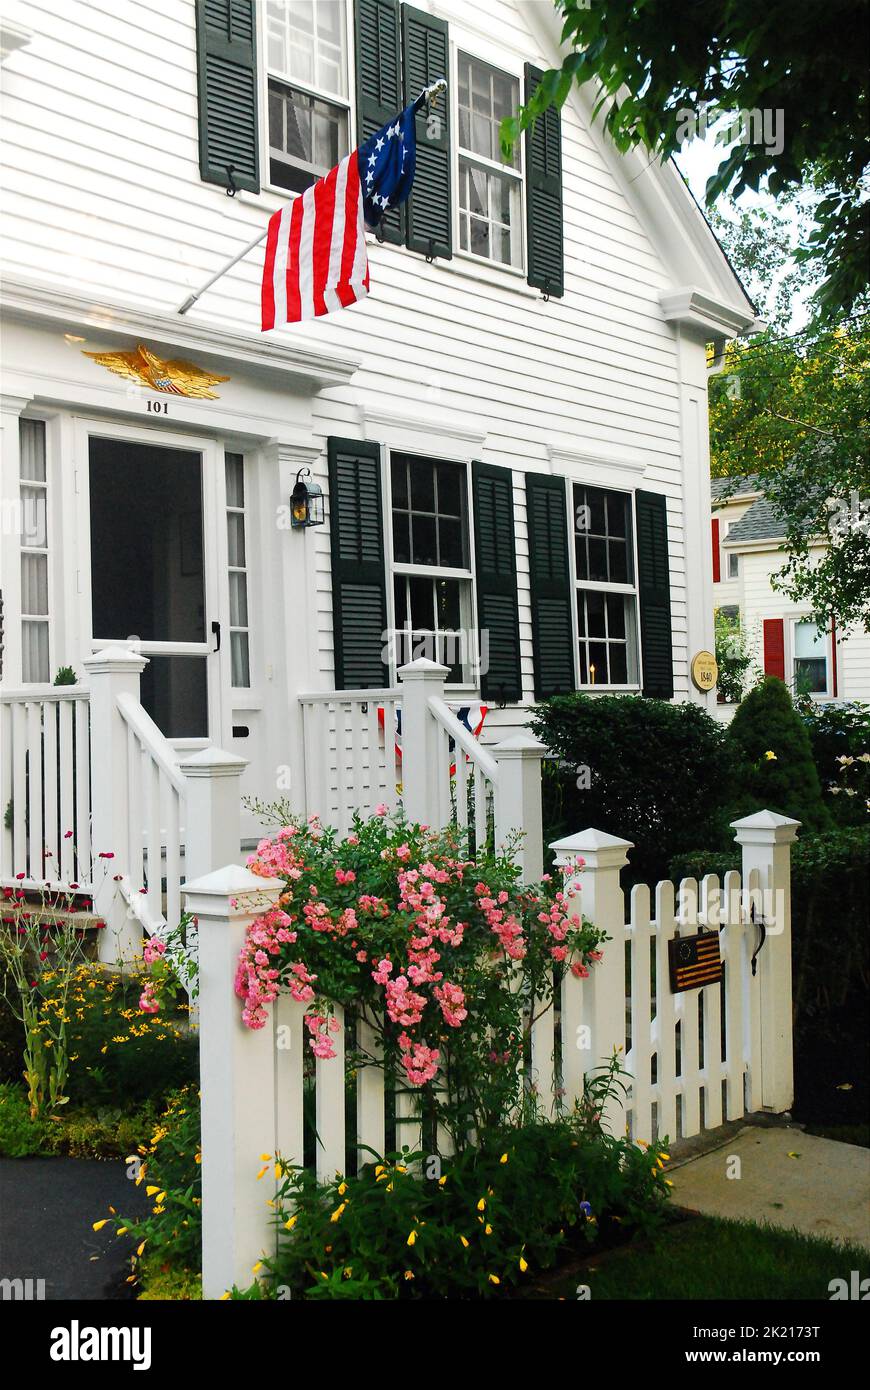 Am 4. Juli fliegt in Bristol, Rhode Island, eine amerikanische Flagge auf ein patriotisches Haus Stockfoto